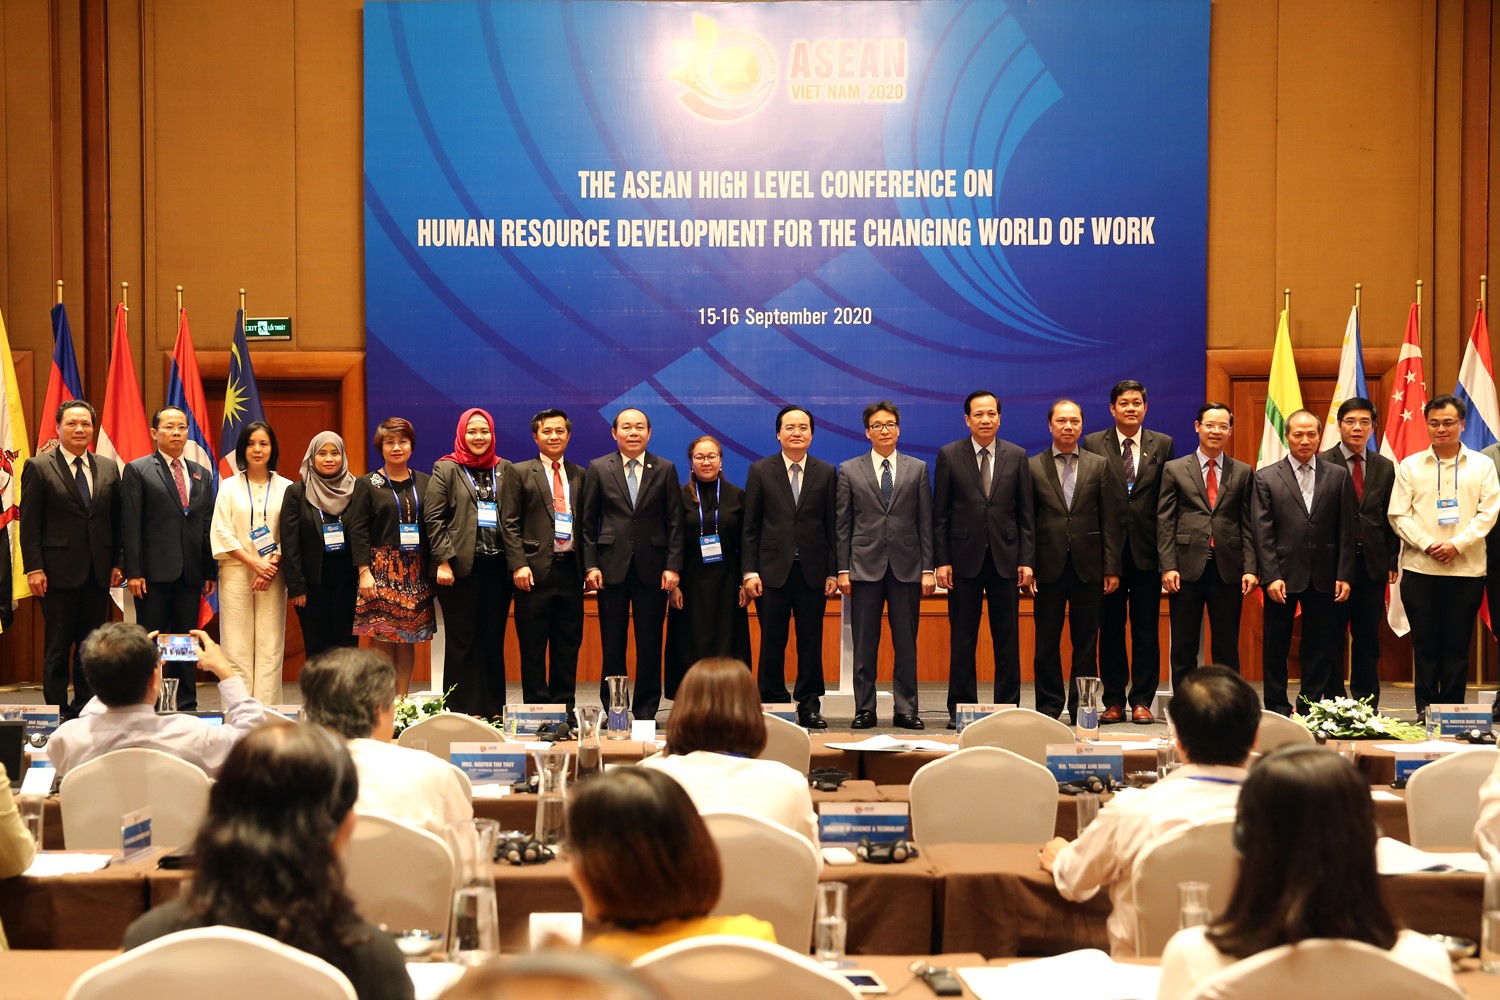 Phó Thủ tướng Vũ Đức Đam và các đại biểu dự Hội nghị tại điểm cầu Hà Nội. Ảnh: VGP/Đình Nam